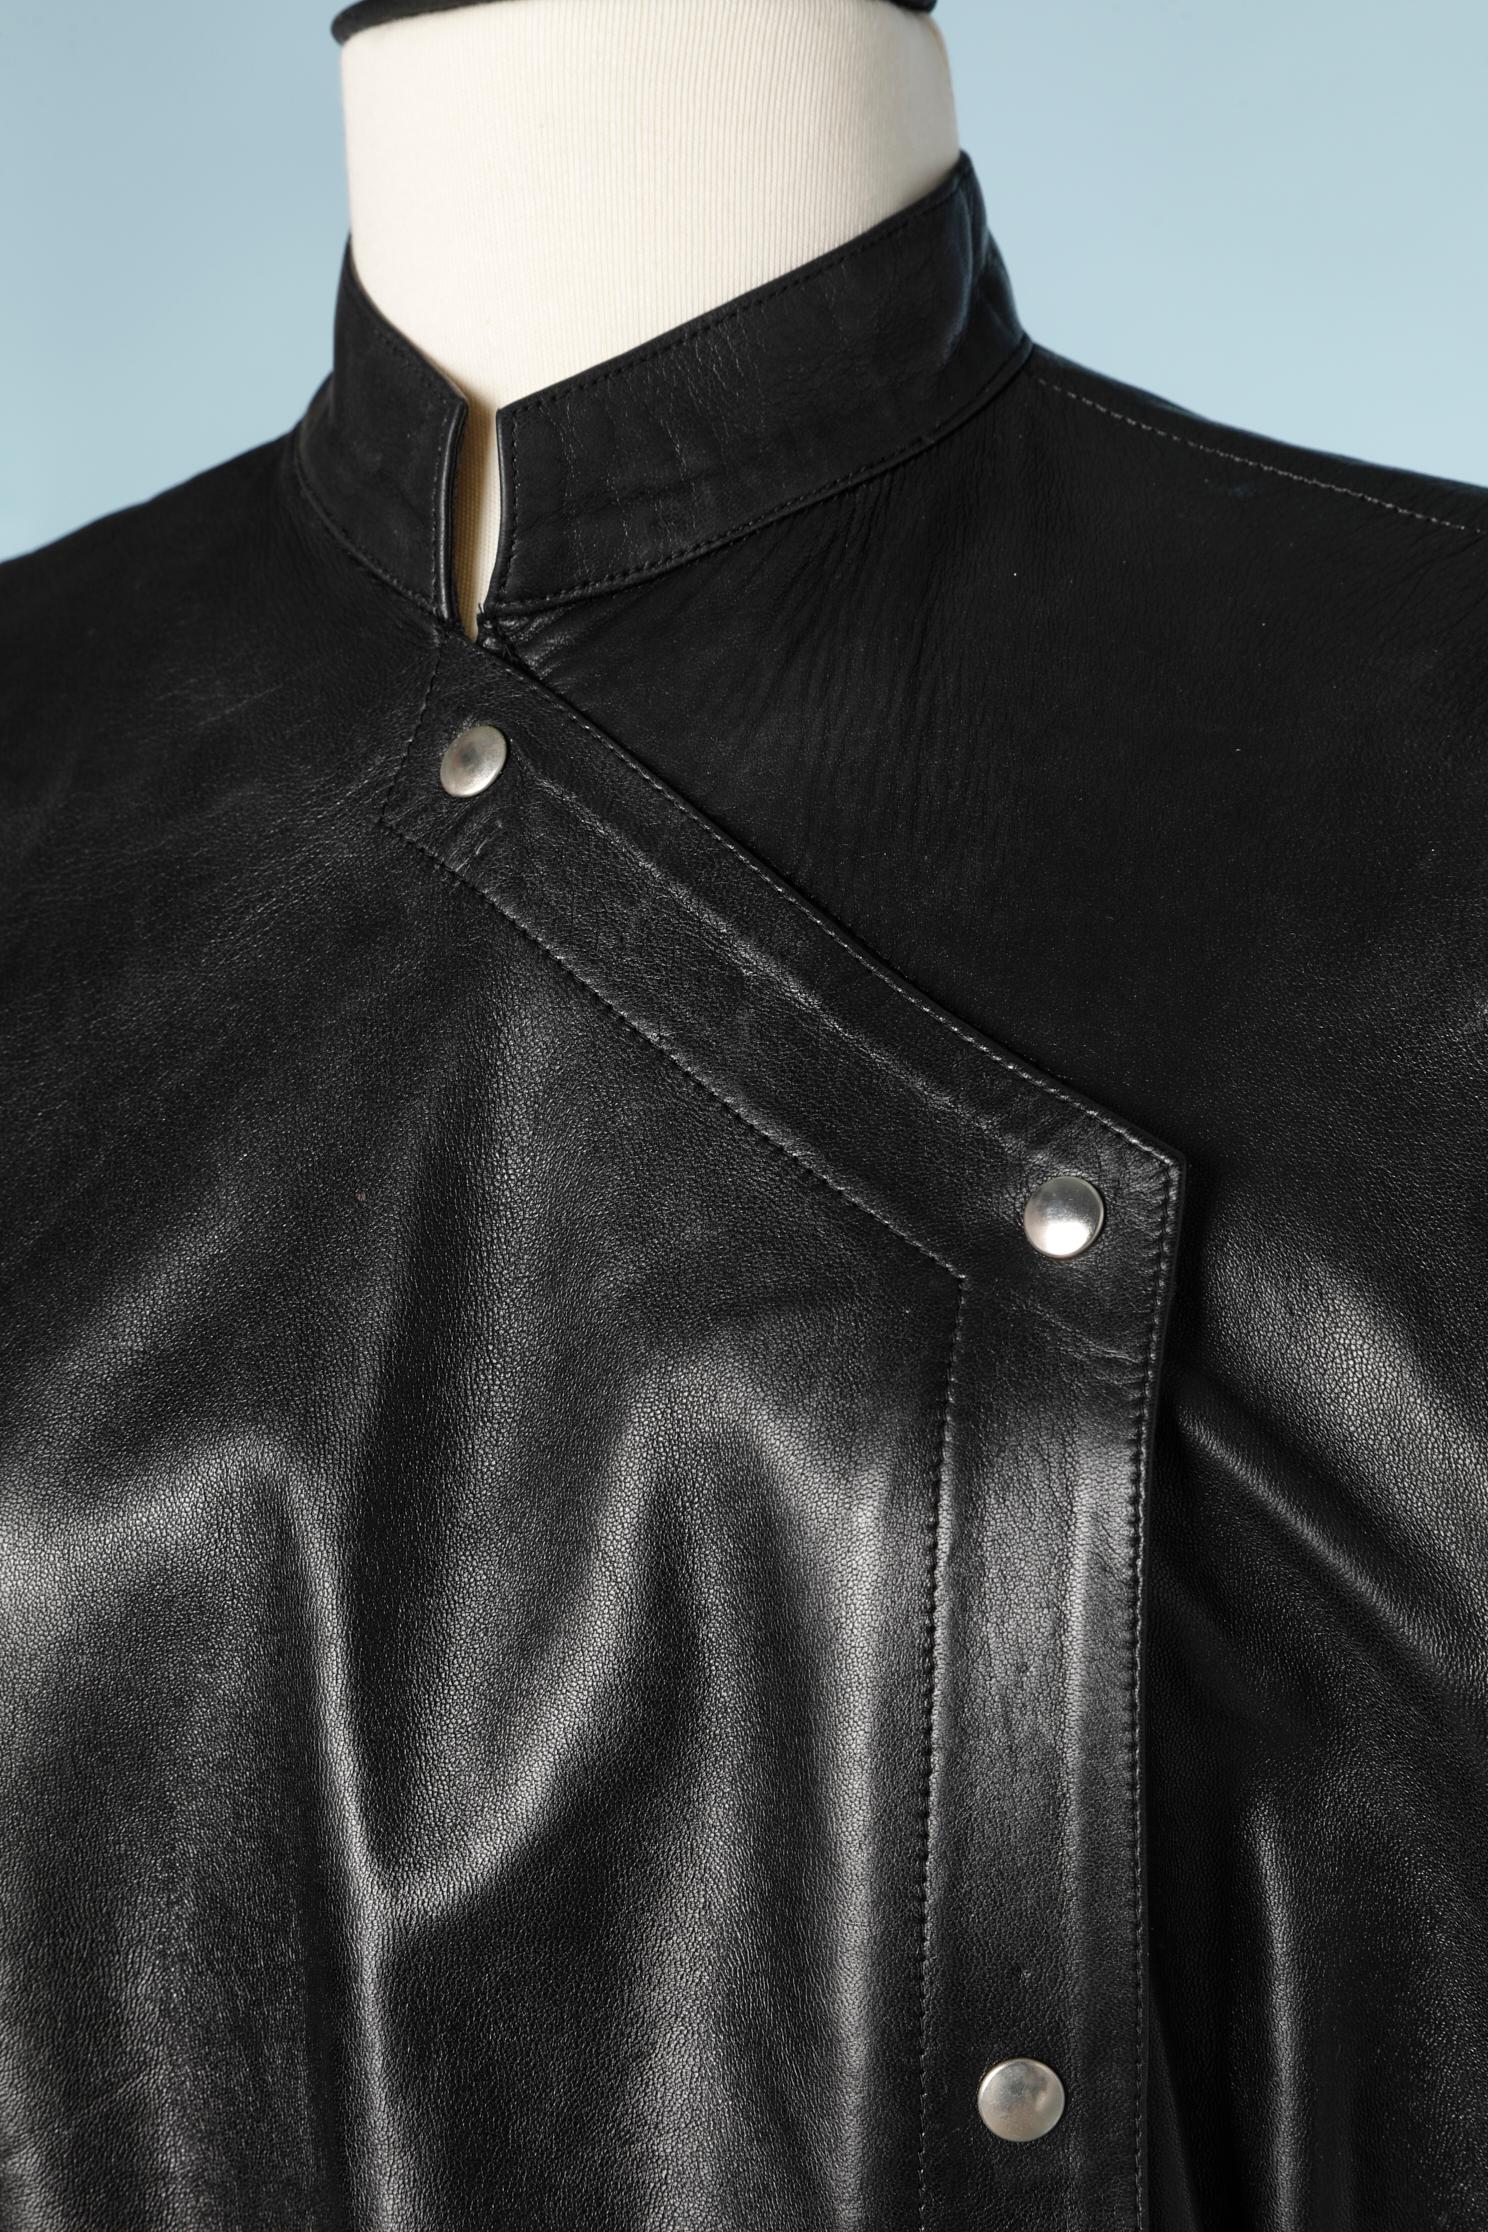 Robe en cuir noir avec bouton pression, doublure en satin noir.
Taille : 40/42 ( Fr) 